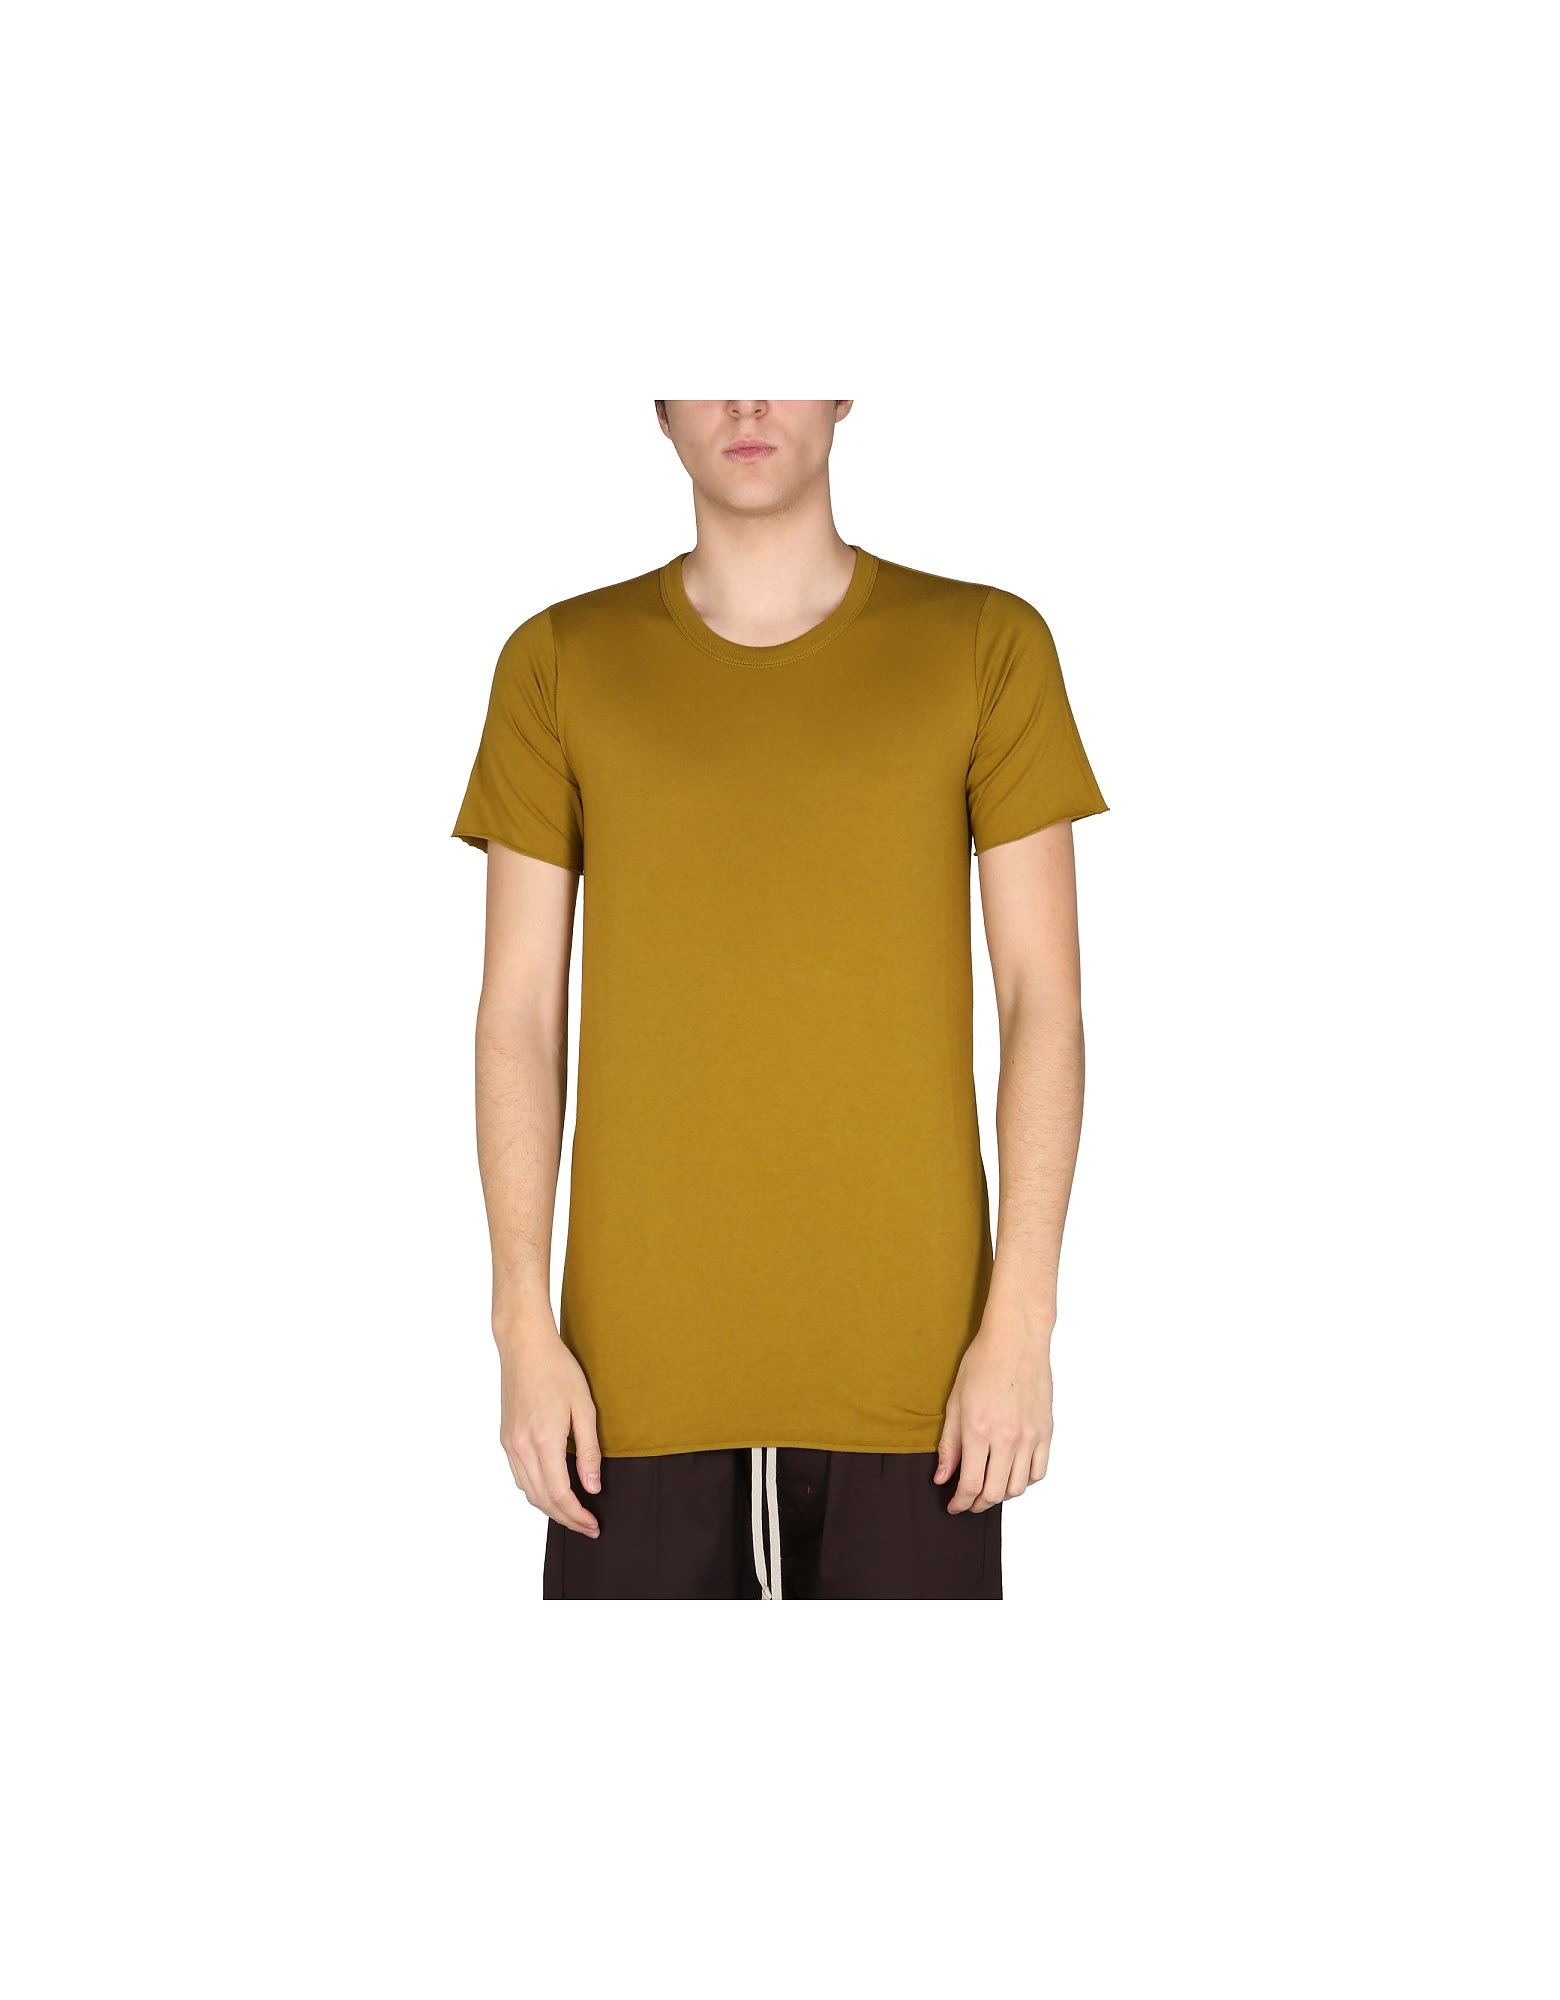 【超お買い得！】 【RICK OWENS】コットンジャージーショート丈プリントTシャツ Tシャツ・カットソー サイズを選択してください:XS